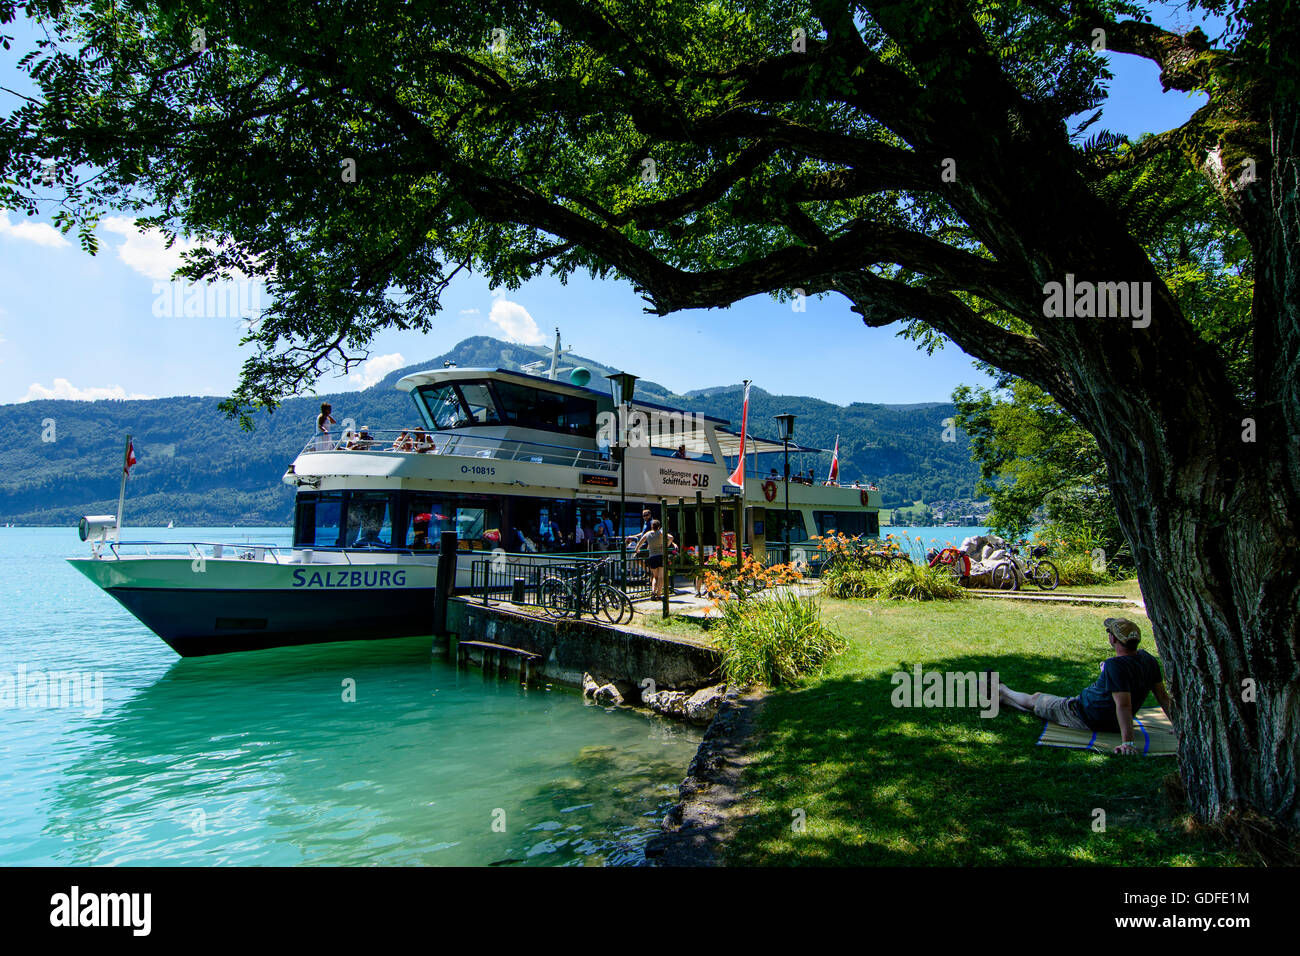 Sankt Gilgen: Excursión en barco por el lago Wolfgangsee en el dock Fürbergbucht, Austria, Salzburgo, Salzkammergut Foto de stock